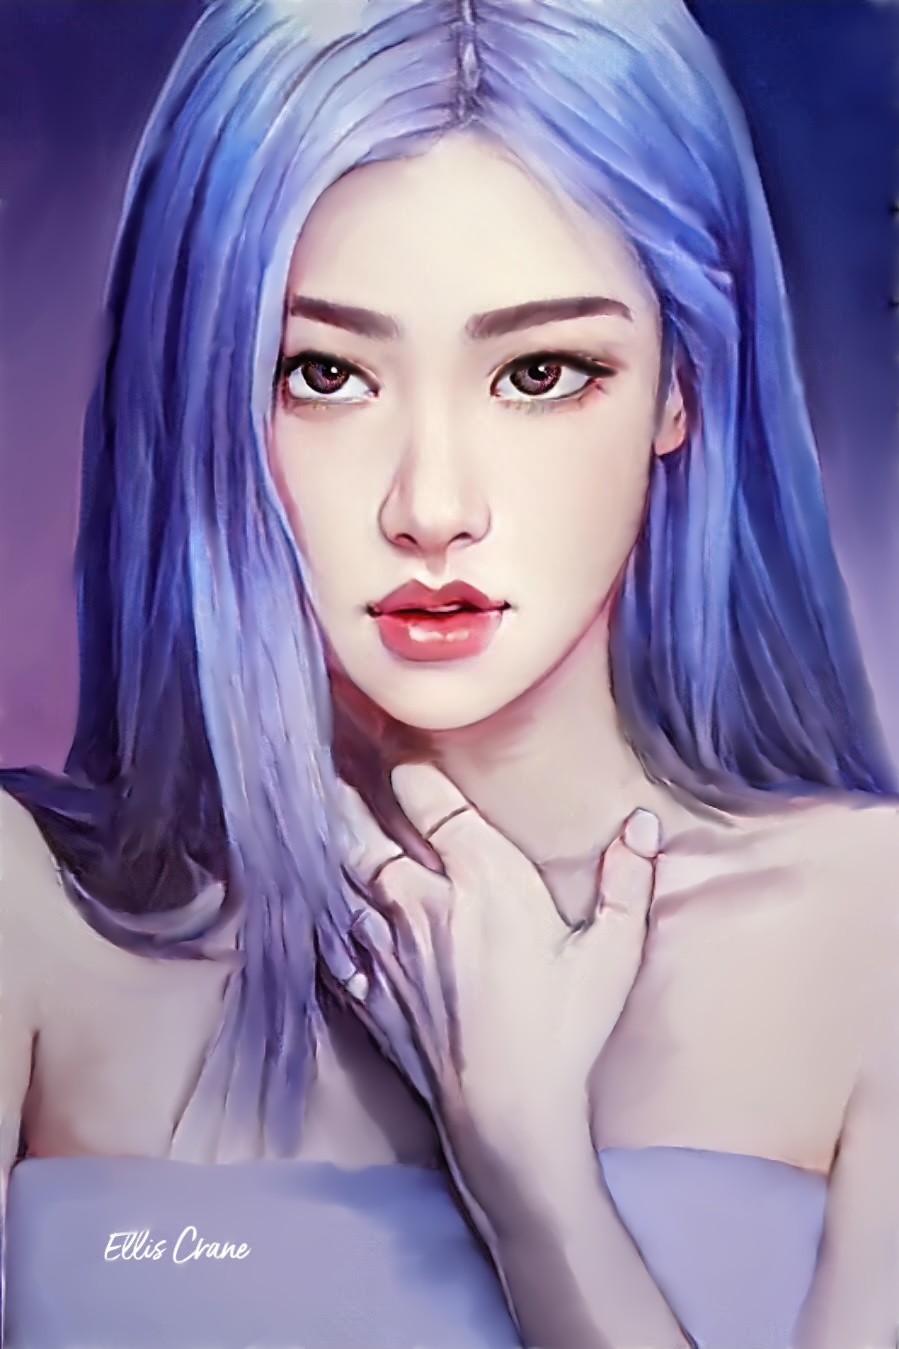 BlackPink - Rose (with blue hair) by EllisC50 on DeviantArt